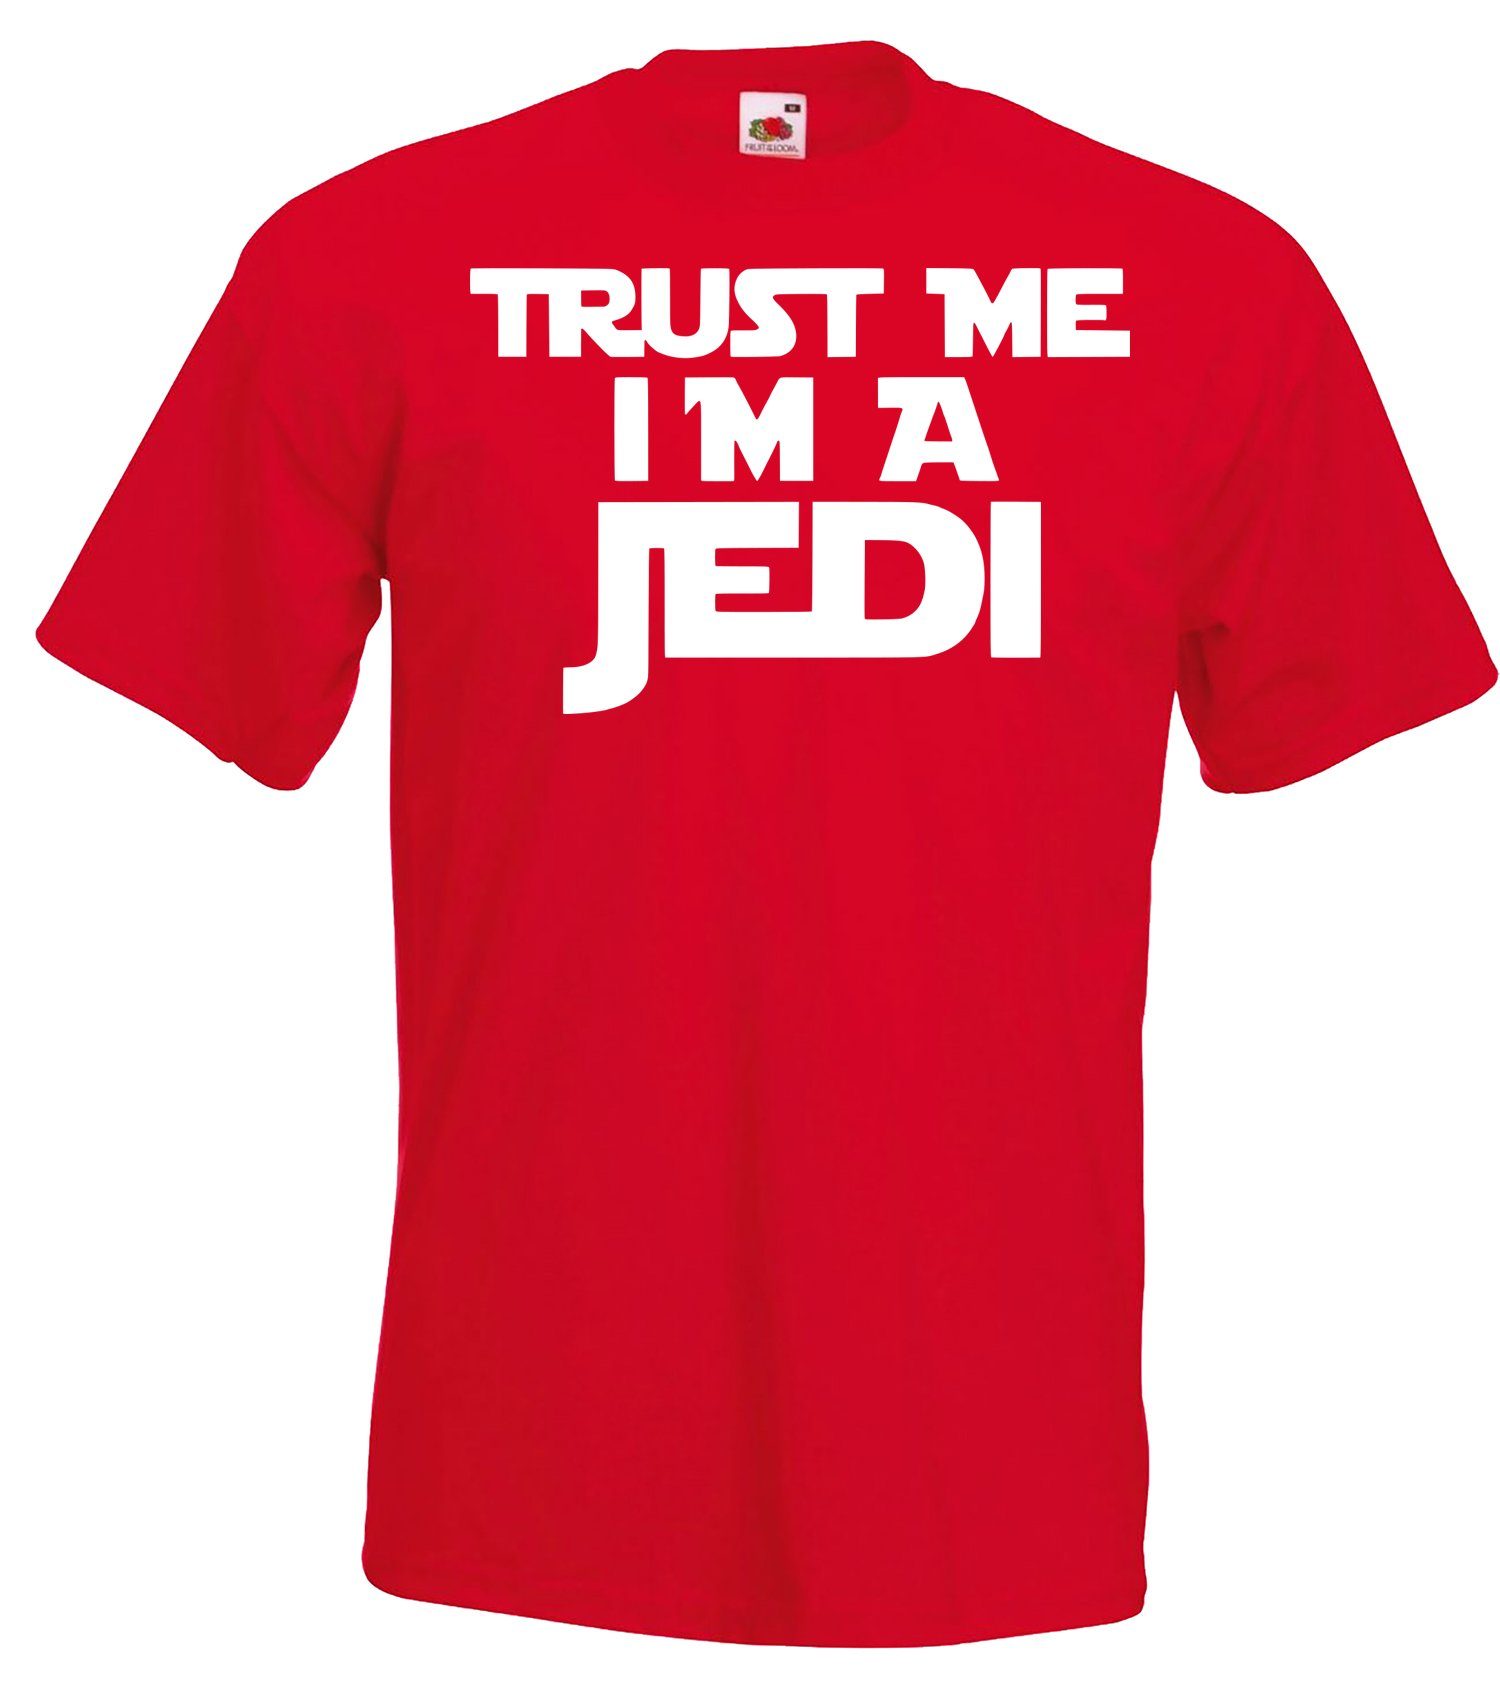 Designz T-Shirt Rot lustigen me T-Shirt Youth I'm Spruch a Trust Herren Jedi mit